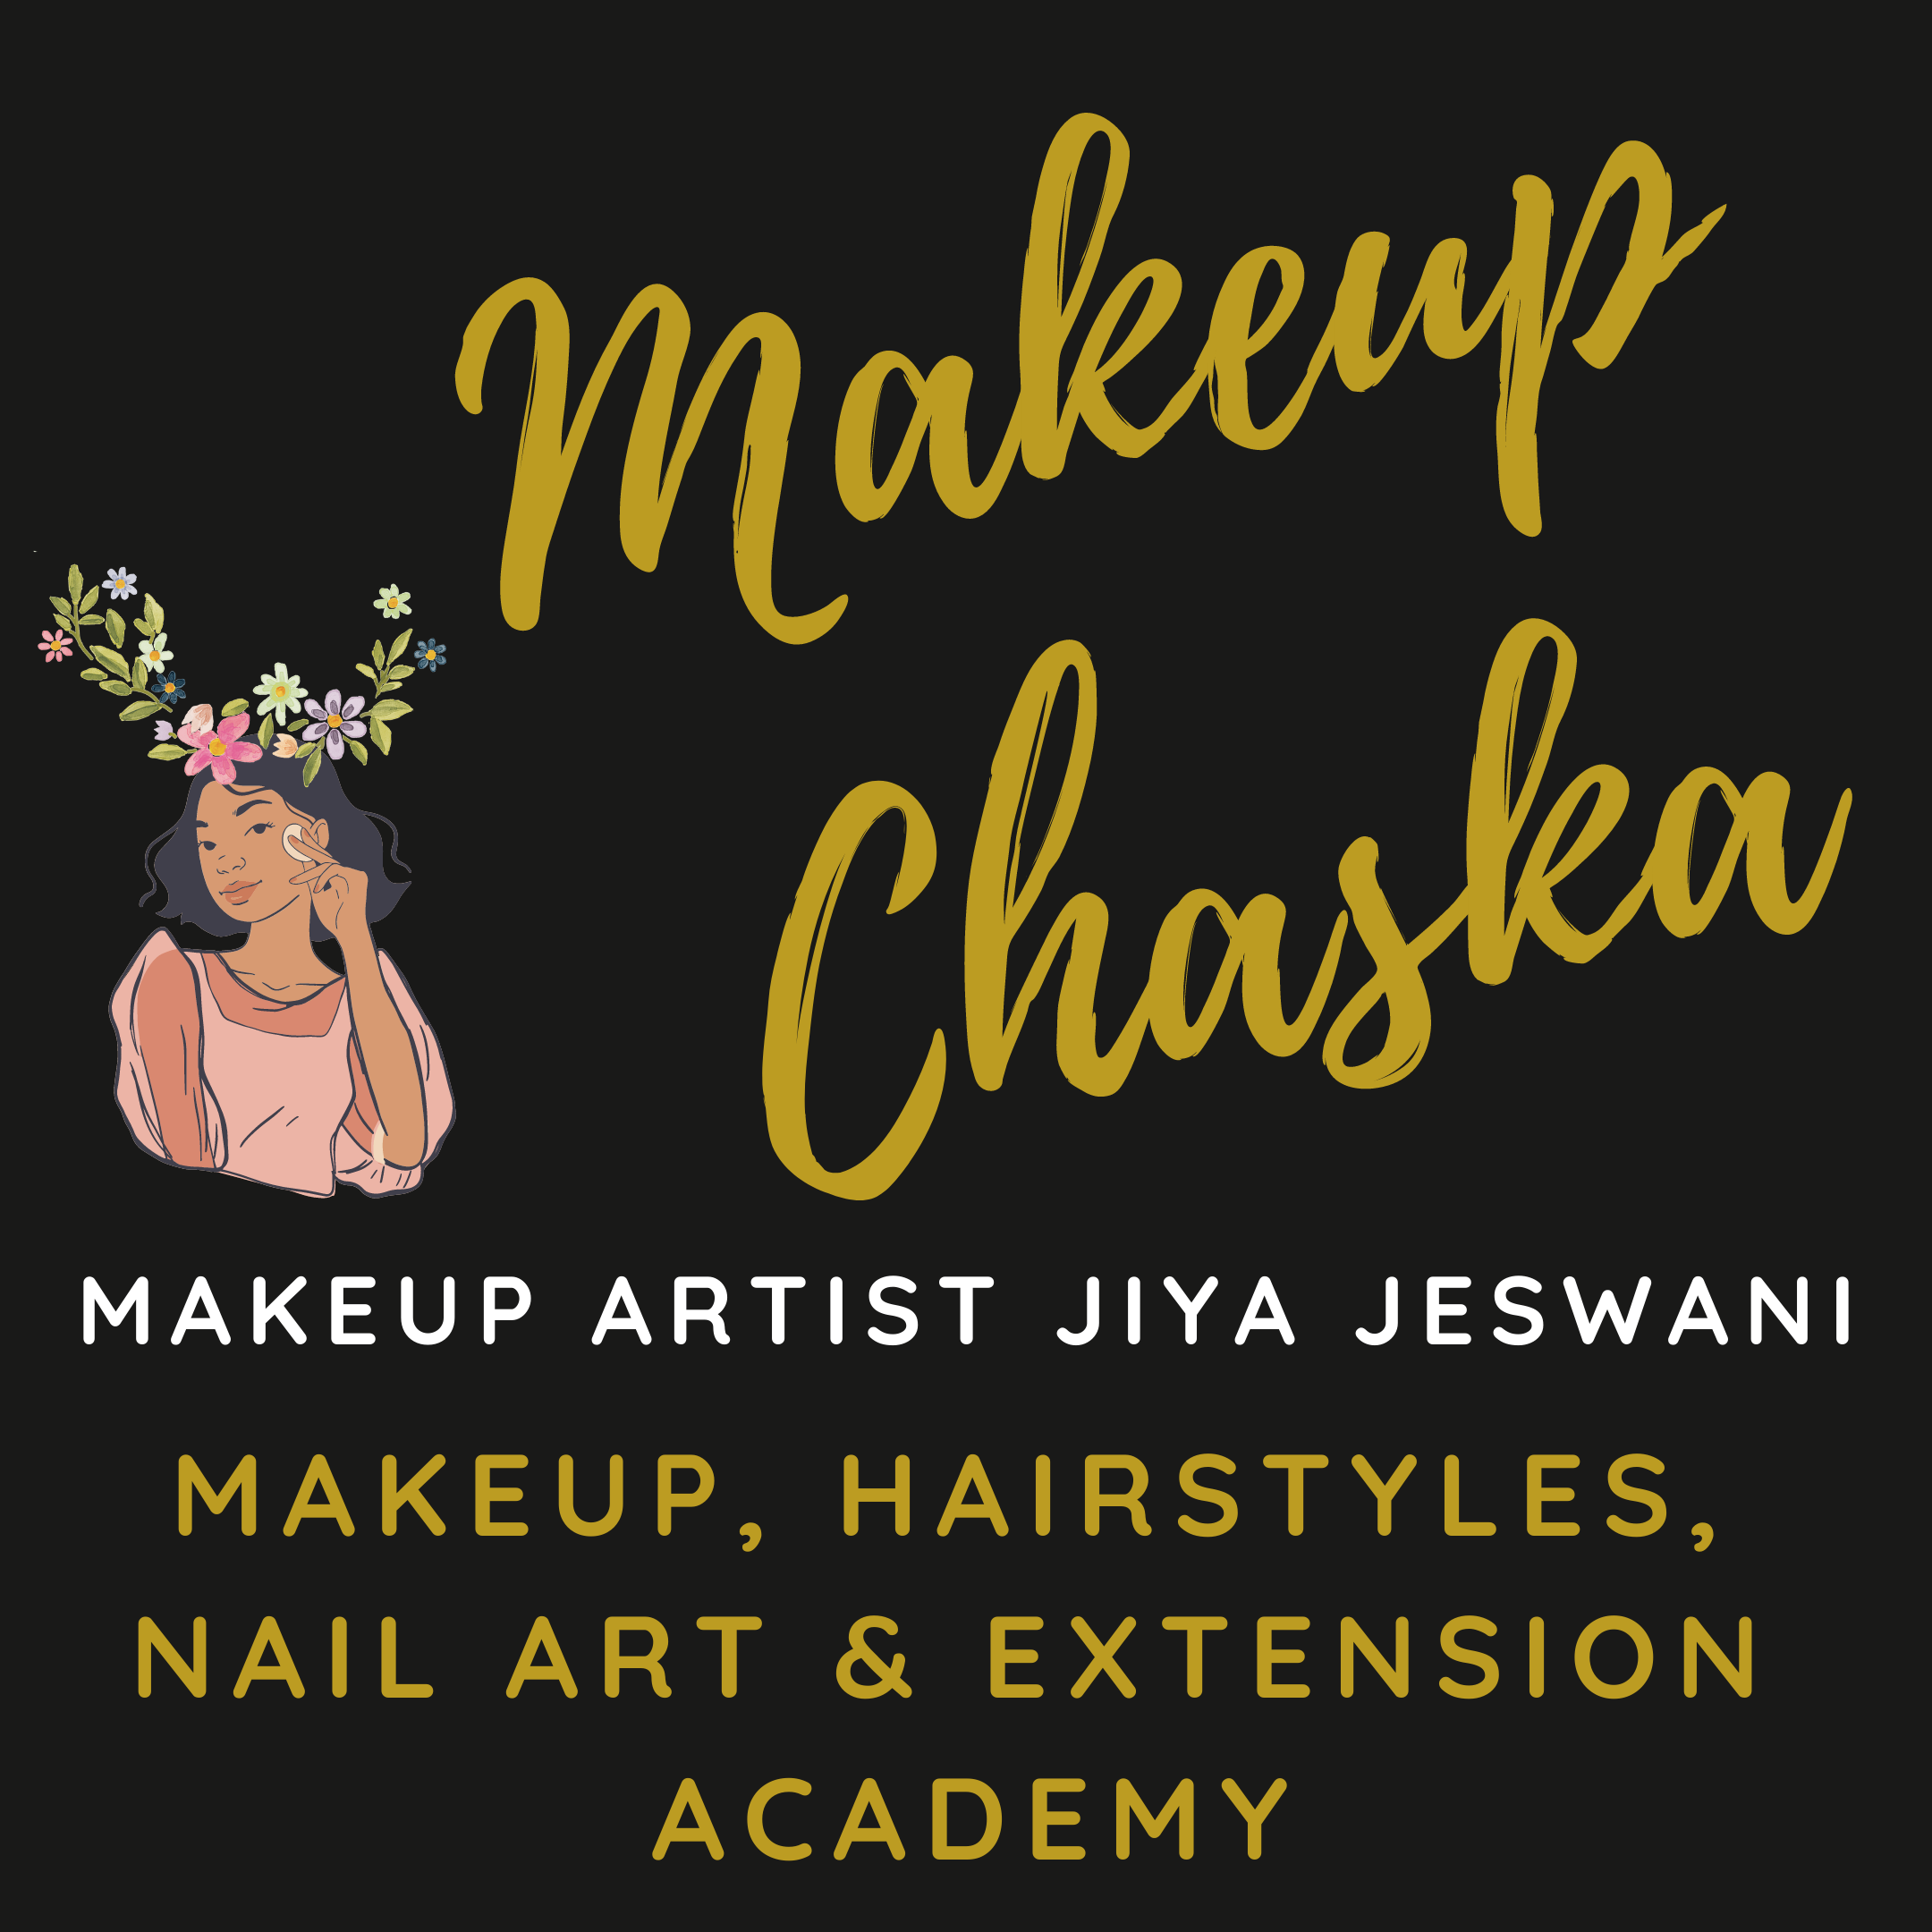 Makeup Chaska Academy